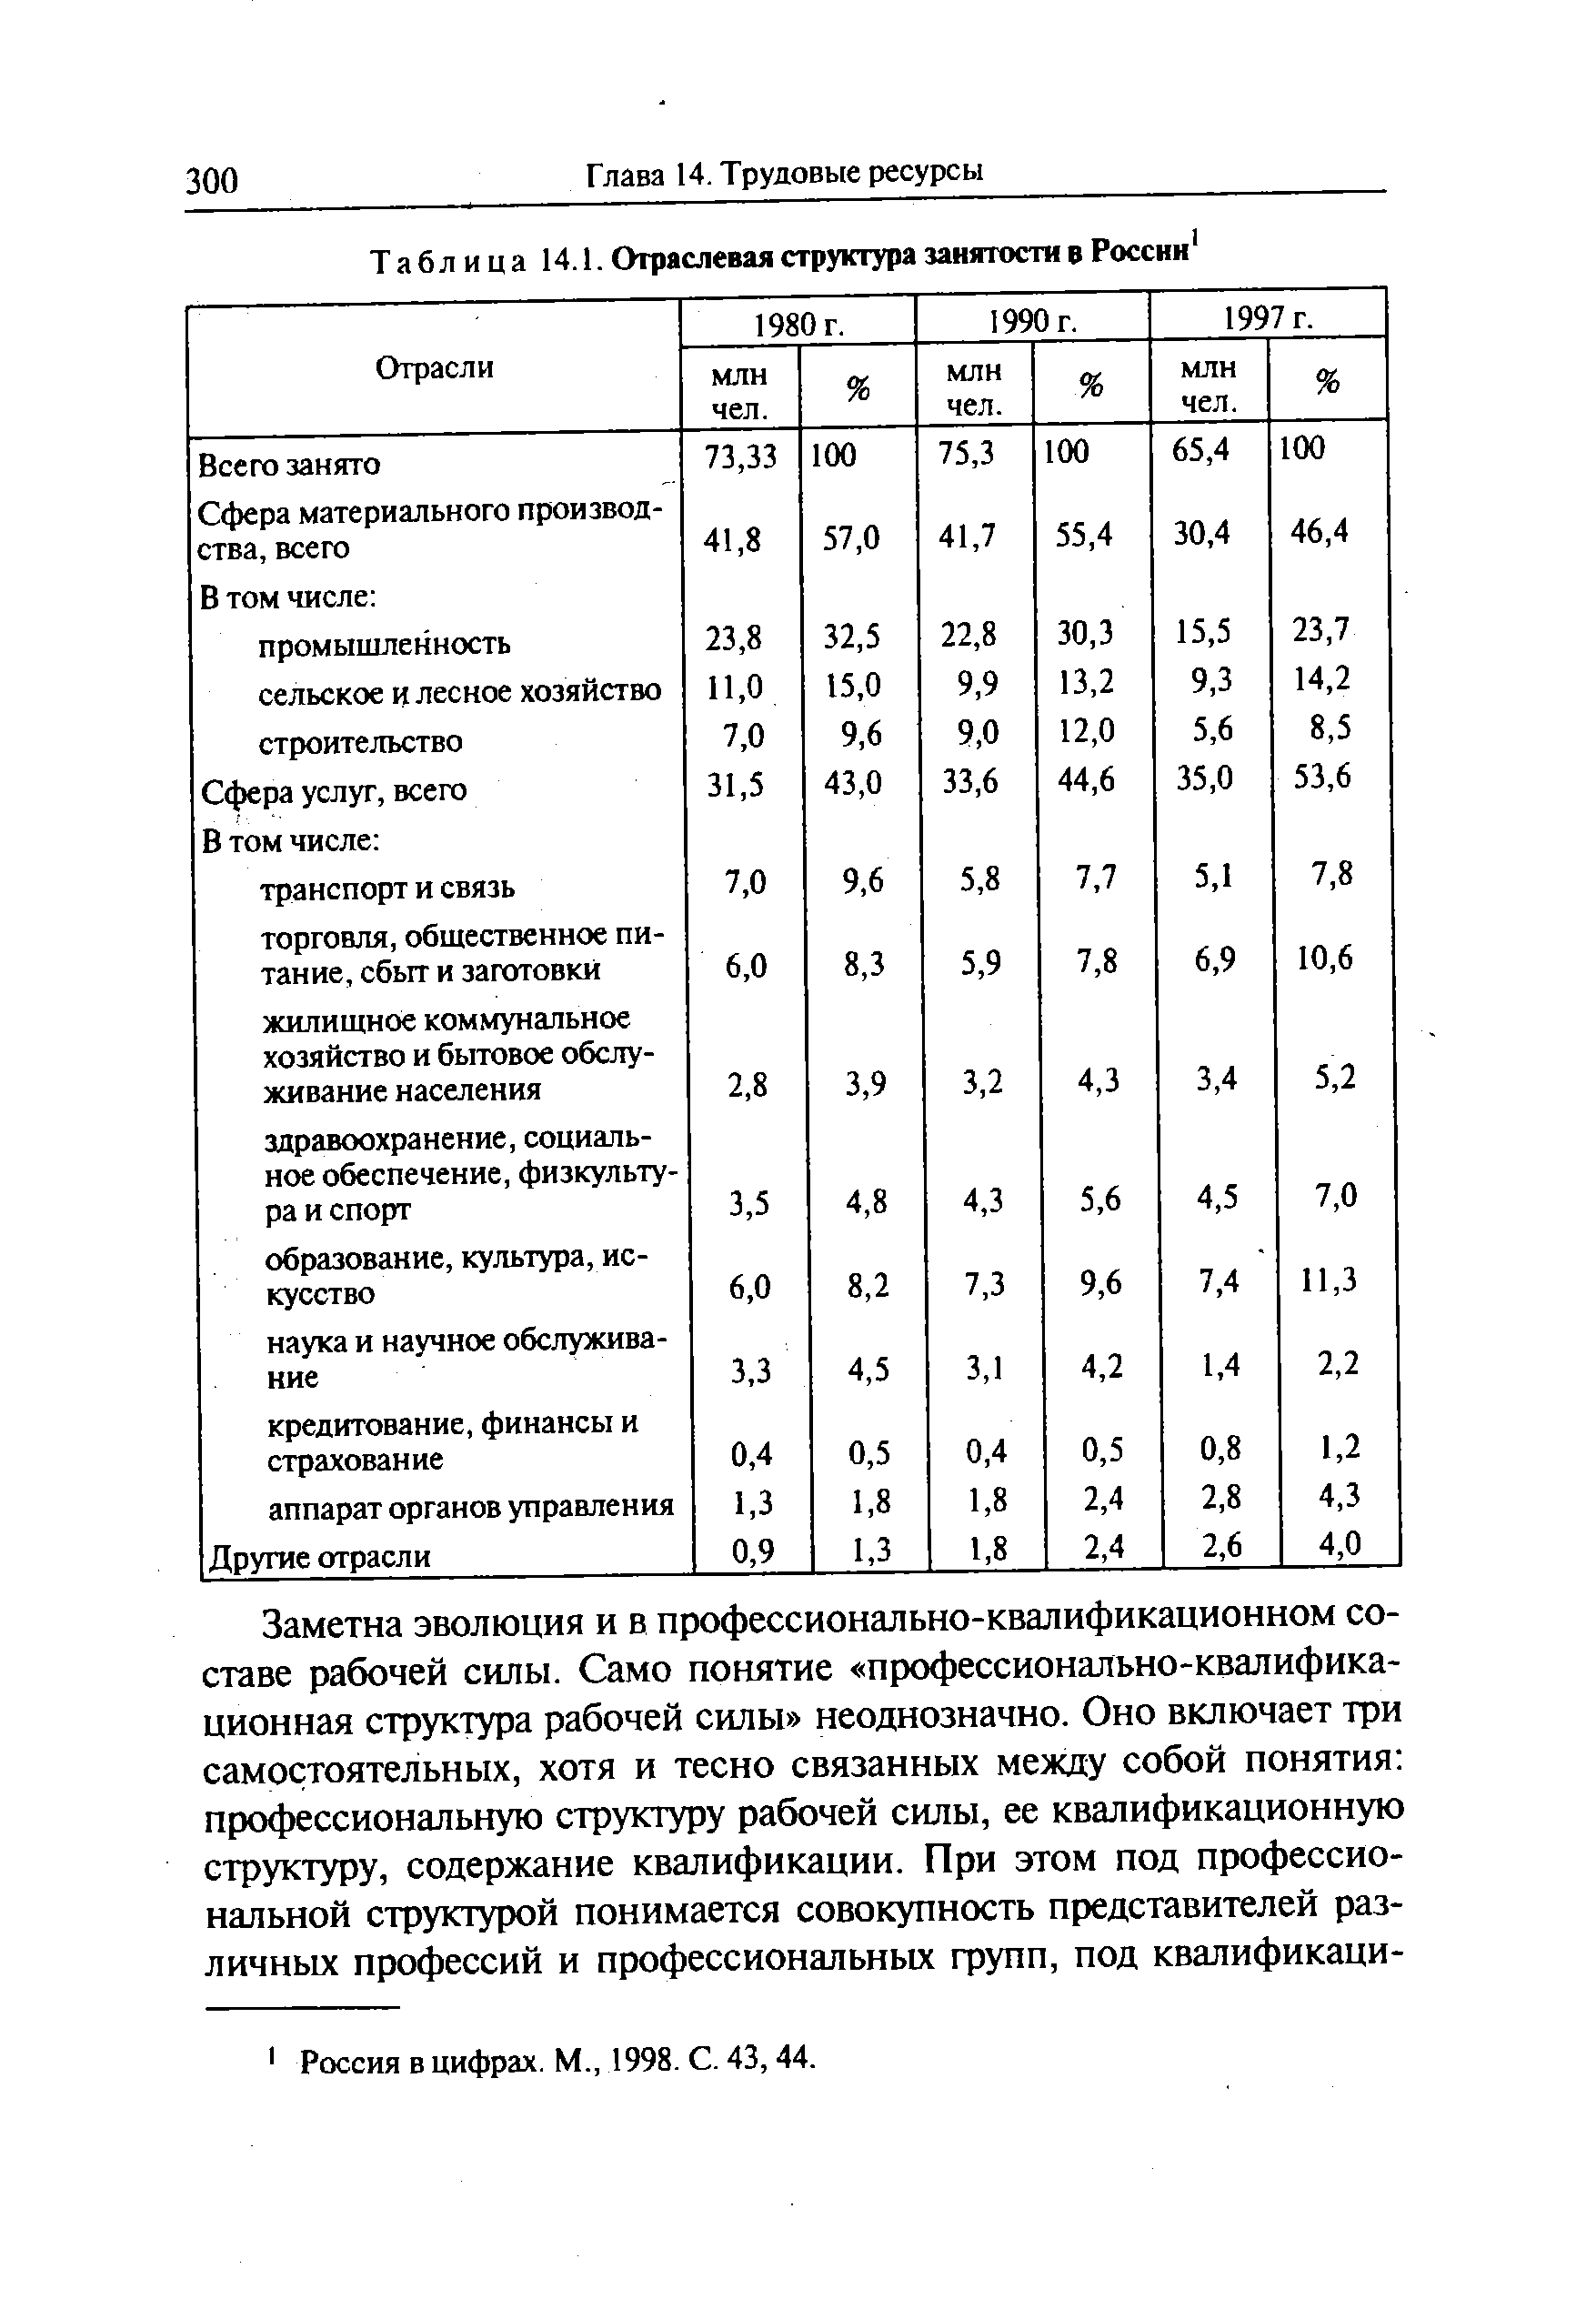 Таблица 14.1. Отраслевая структура занятости в России
